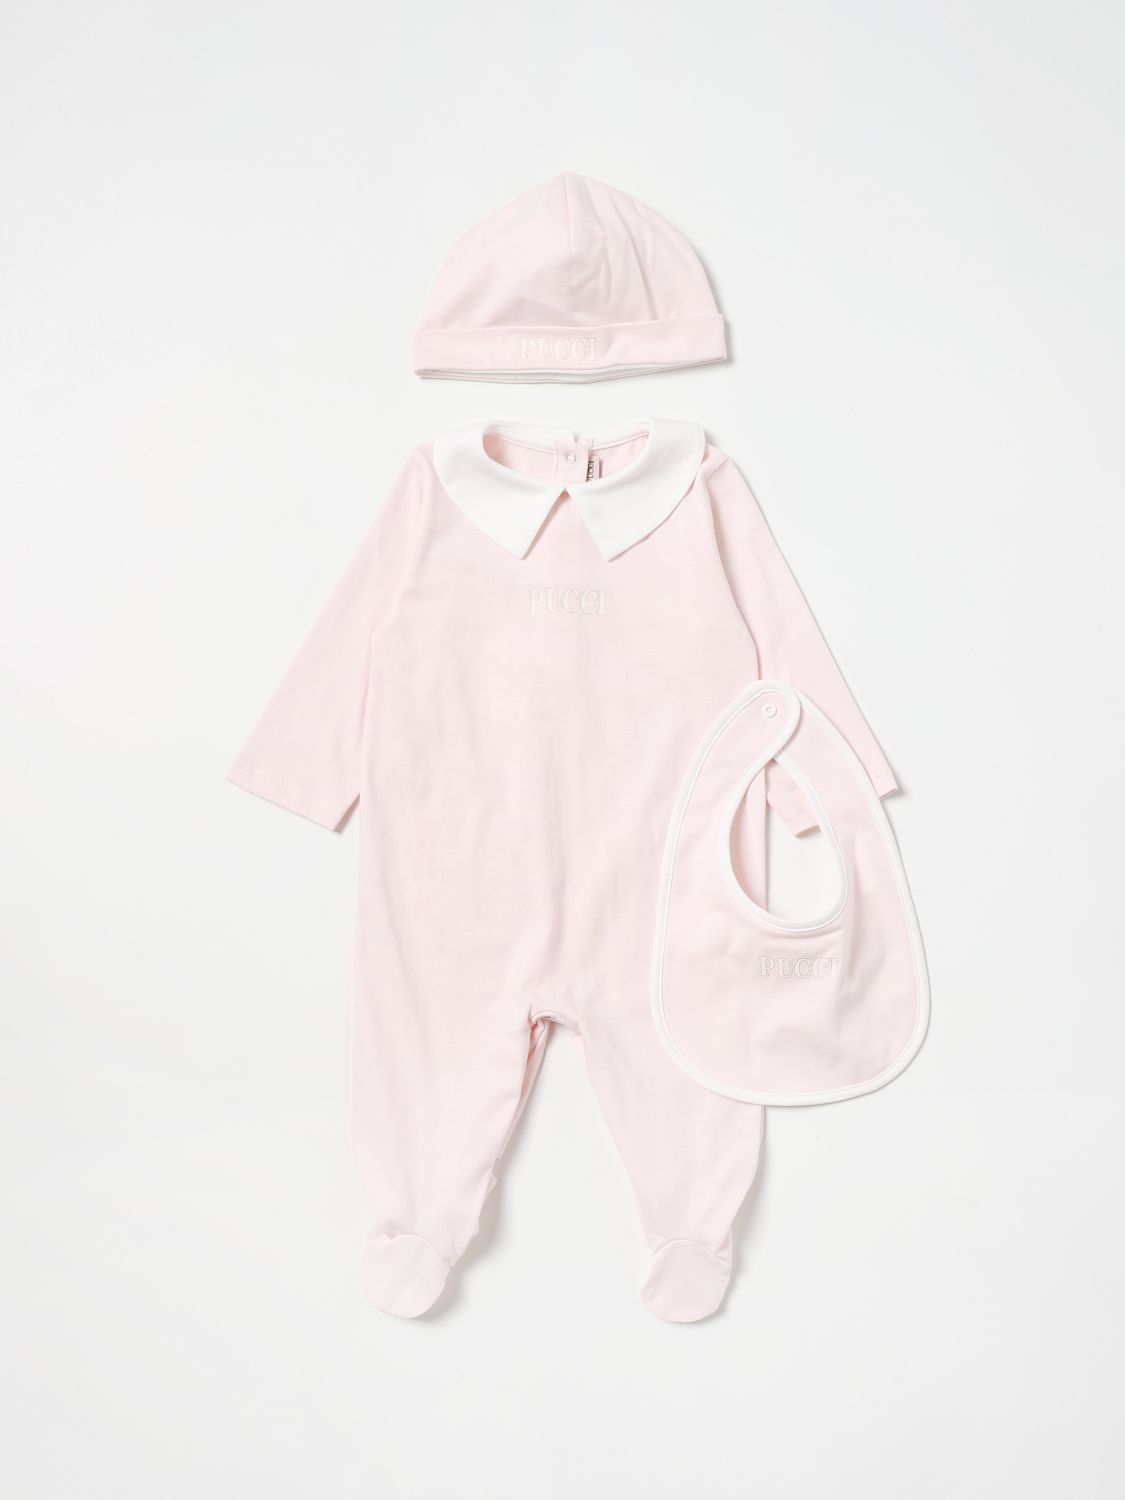 婴儿全身套装 Emilio Pucci: Emilio Pucci婴儿全身套装婴儿 粉色 1